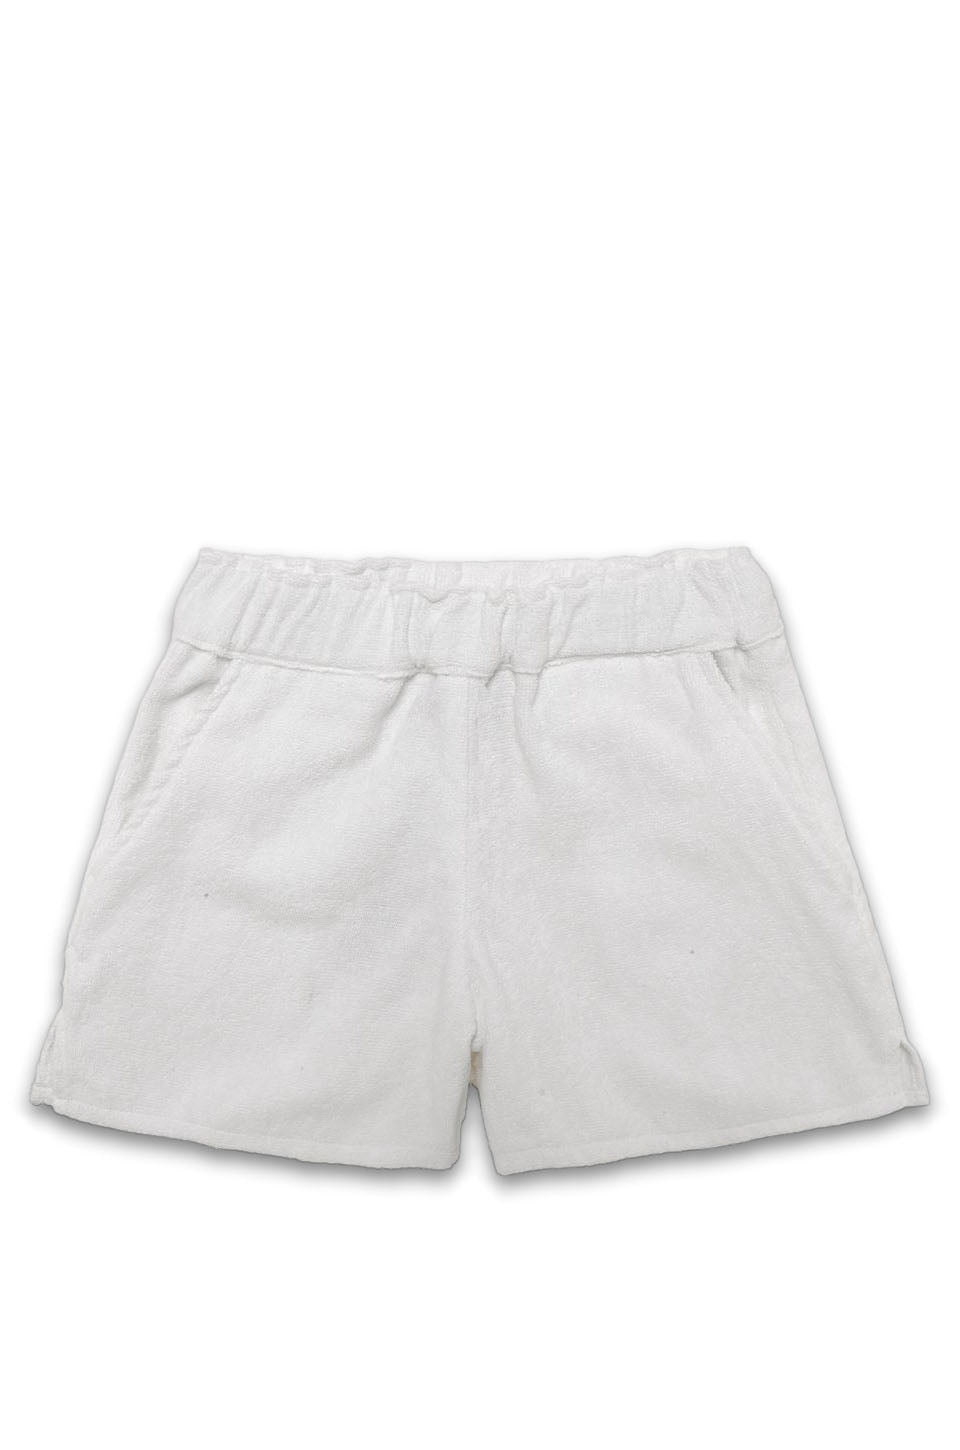 OAS White Shorts